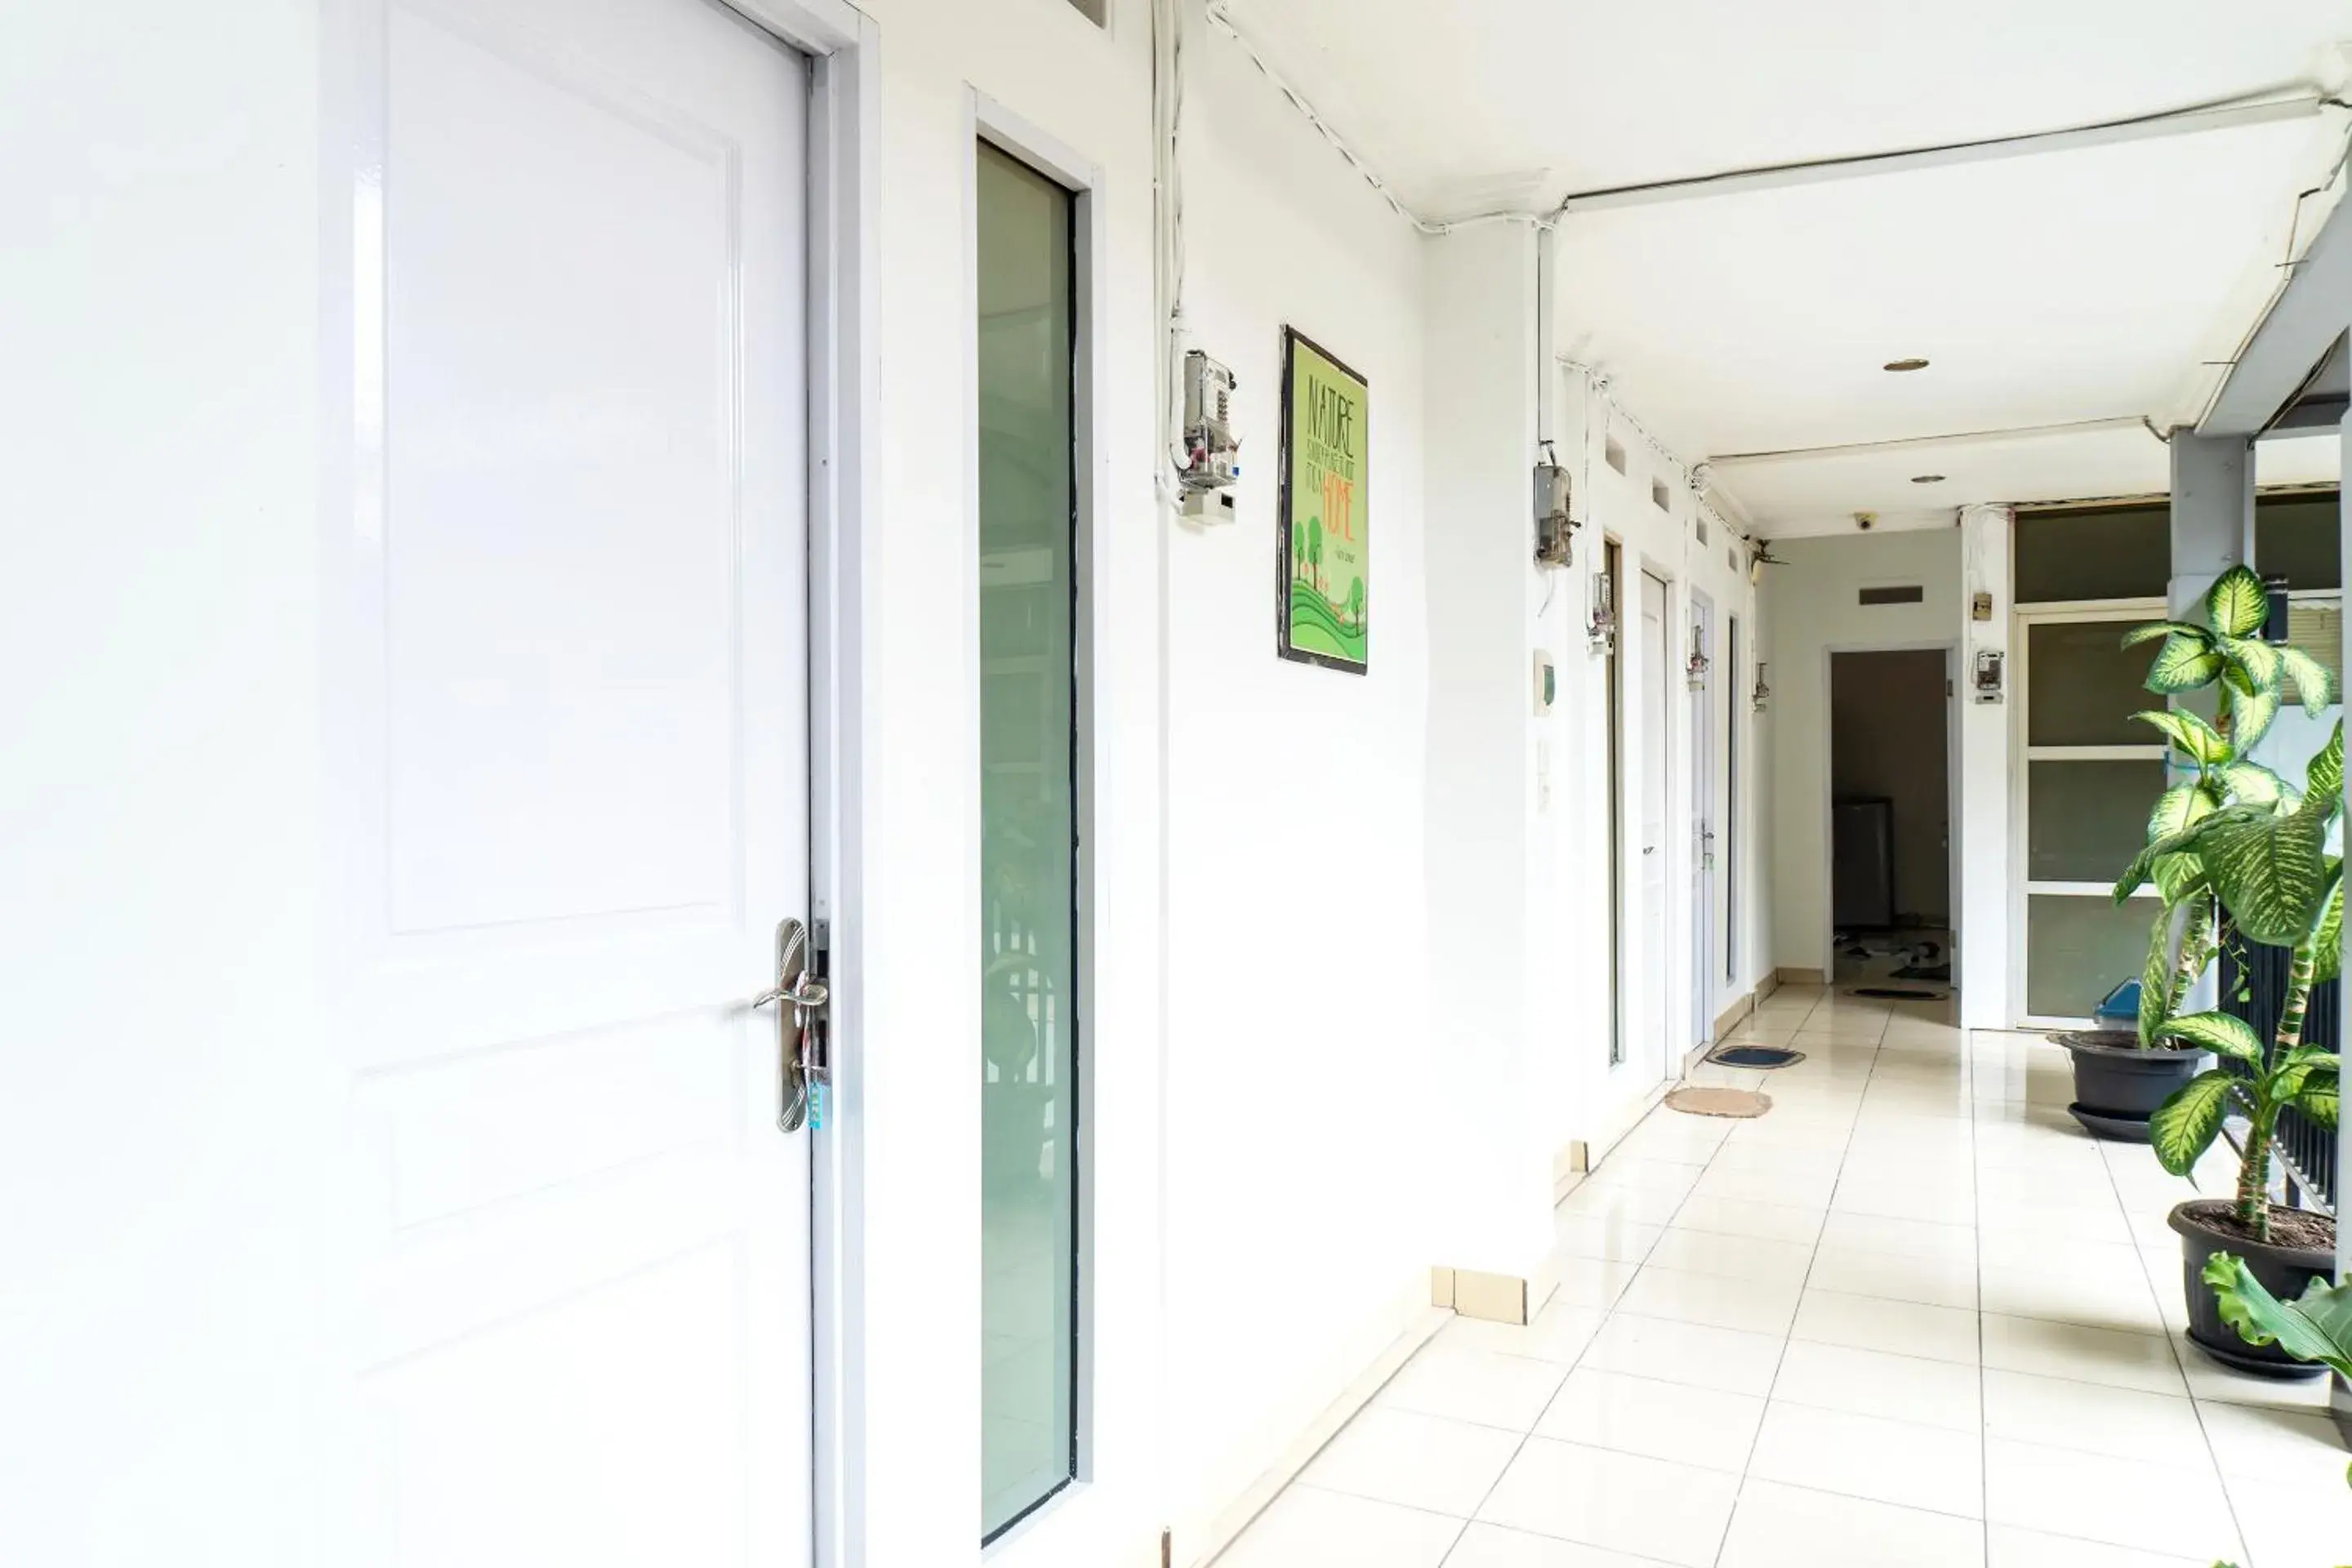 Area and facilities in Vaccinated Staff - OYO 617 Sukaraja Residence Syariah